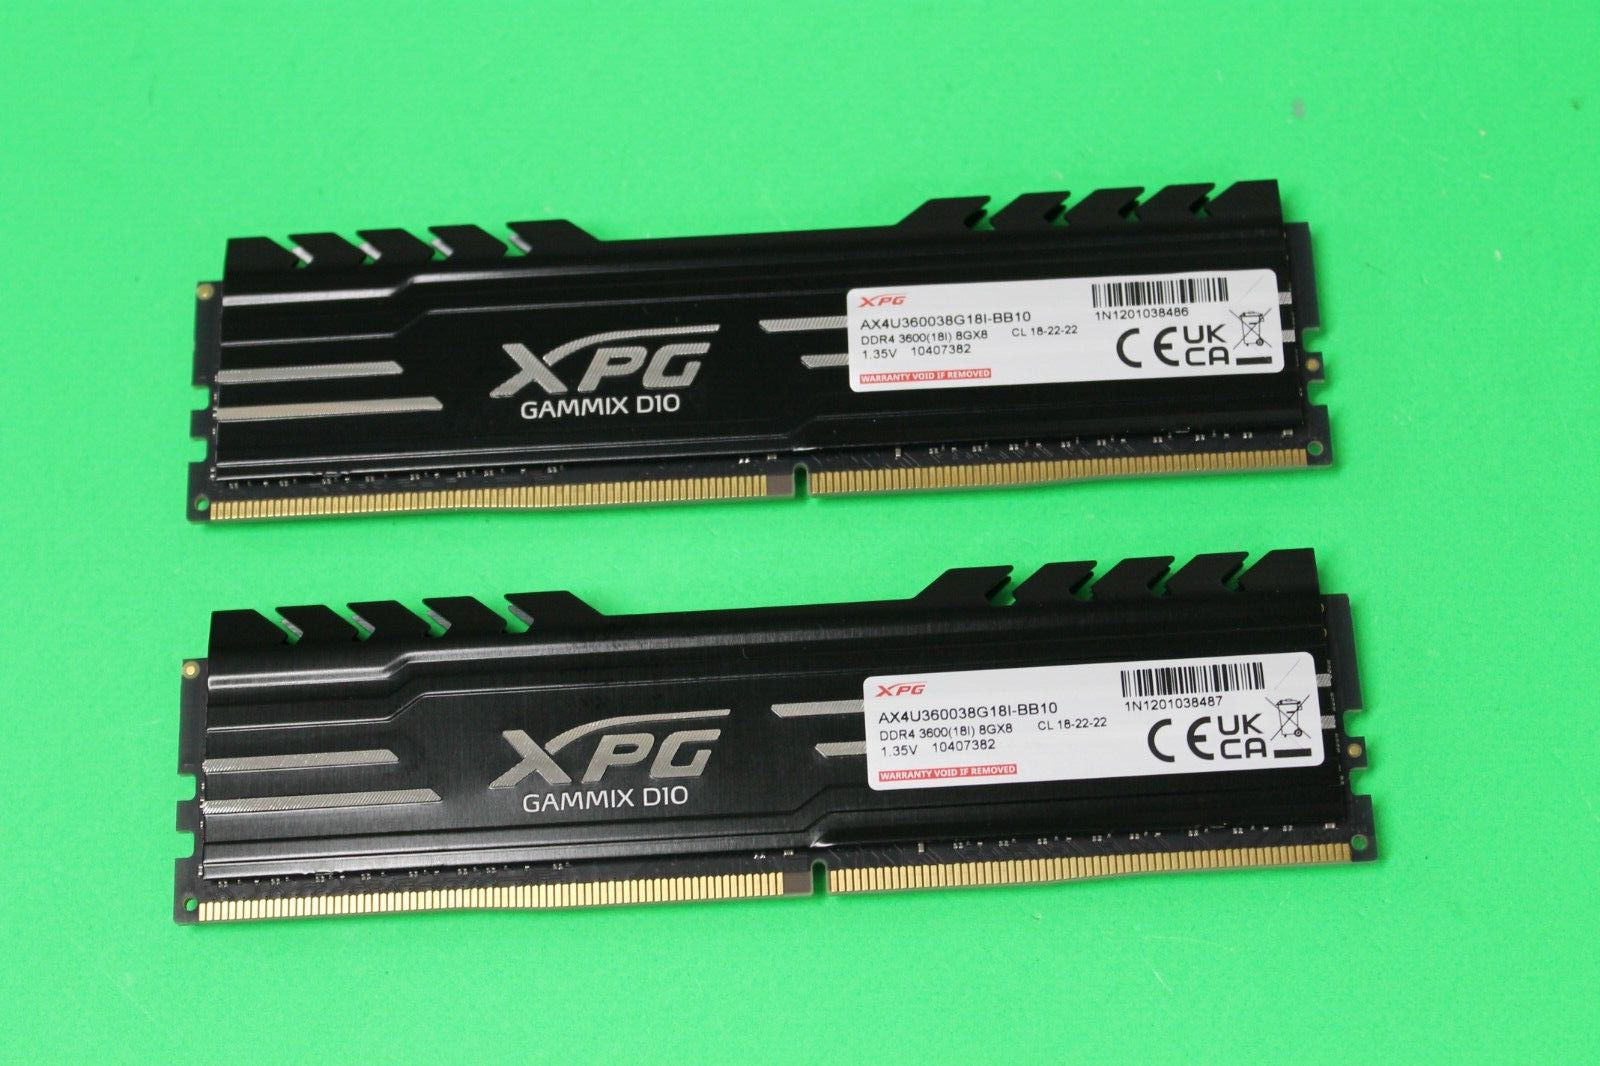 ADATA XPG GAMMIX D10 DDR4 16GB (8GB x 2) 3600MHz CL18 RAM (AX4U36008G18I-BB10)